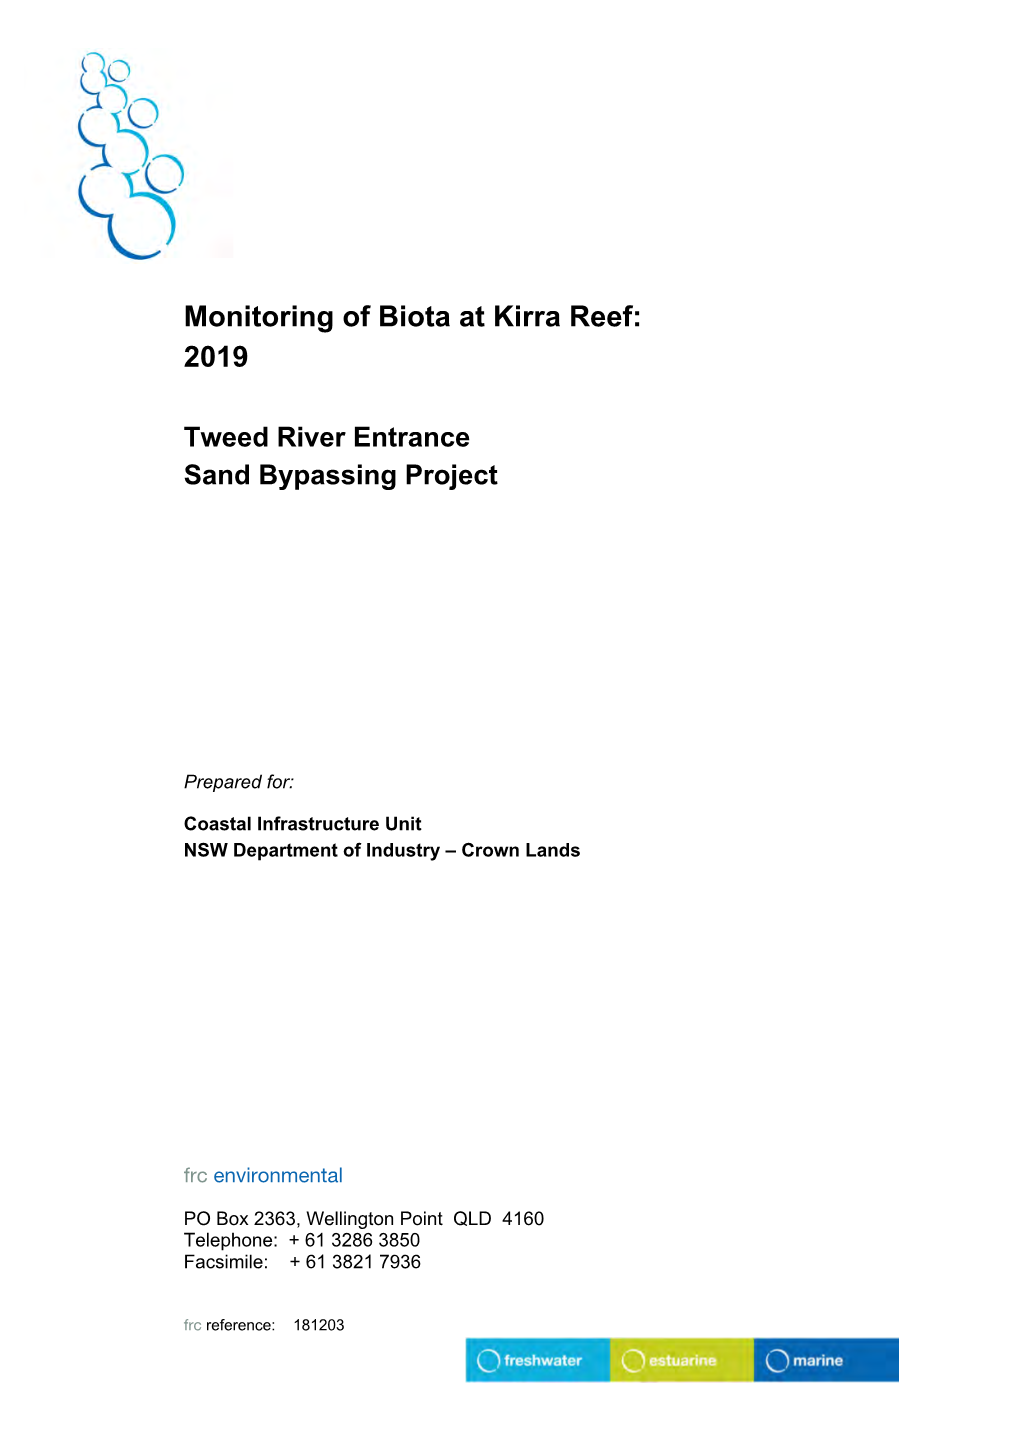 Monitoring of Biota at Kirra Reef: 2019